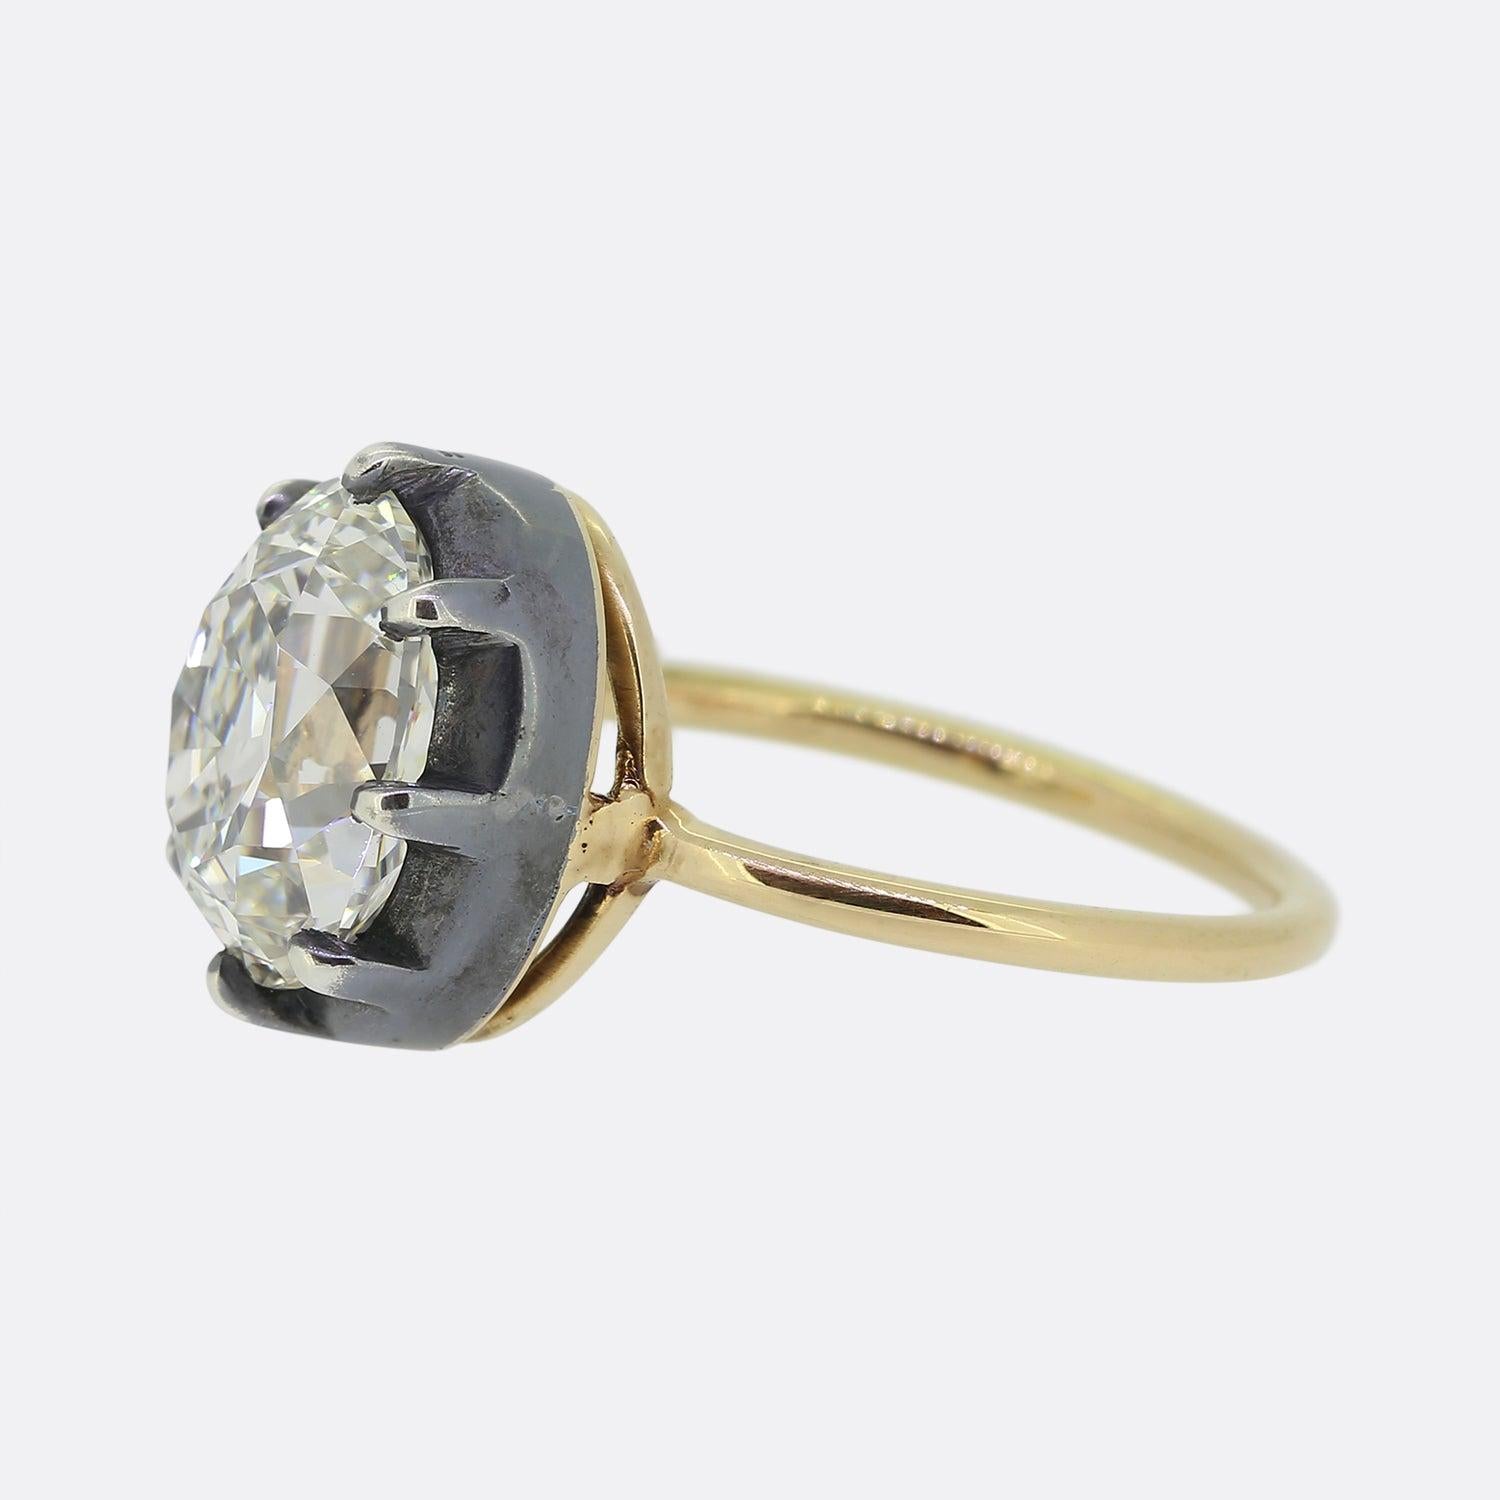 Nous avons ici une merveilleuse bague solitaire en diamant de style géorgien. Montée sur un fin anneau en or jaune 18ct, la pièce présente un diamant ovale facetté de taille ancienne, serti dans une monture à collet en argent avec un large dos